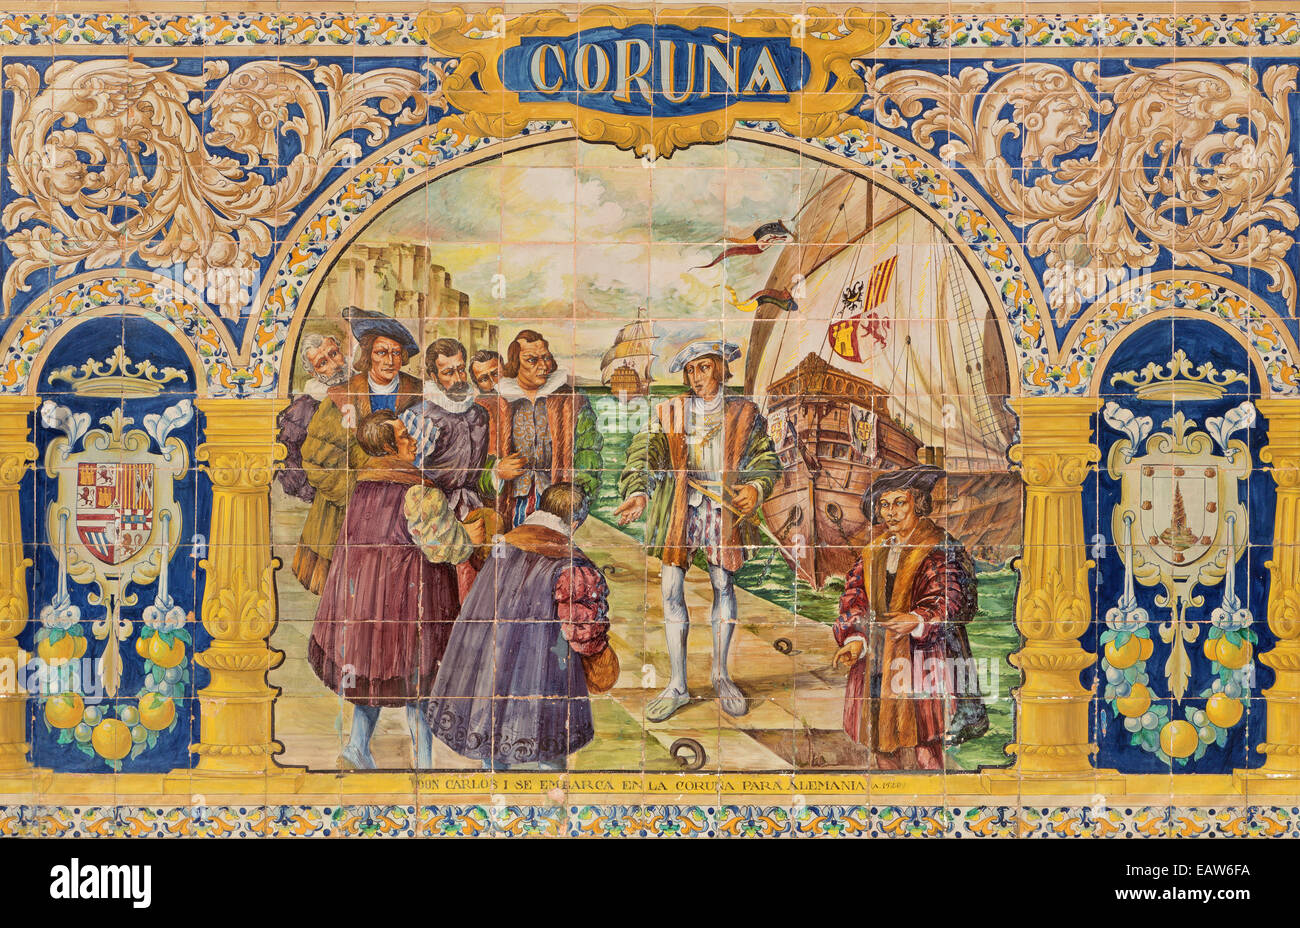 Sevilla - die Coruna als einem gefliesten "Provinz-Nischen" entlang der Wände von der Plaza de Espana (1920er Jahre) von Domingo Prida. Stockfoto